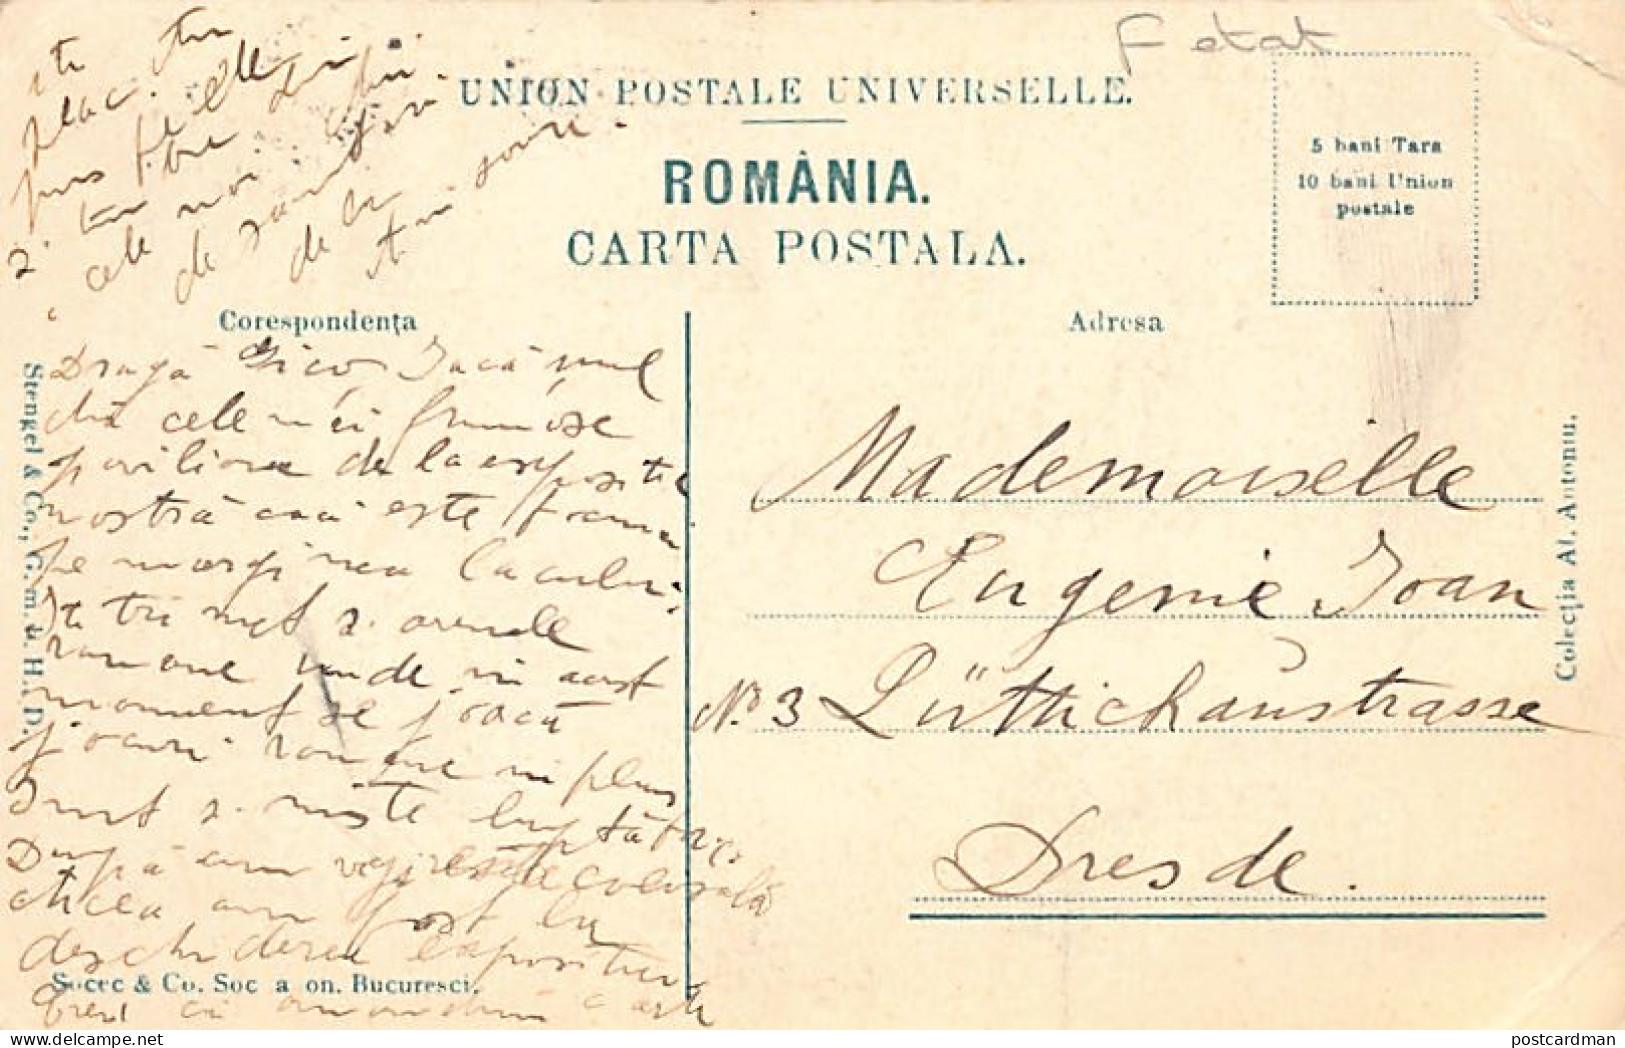 Romania - BUCURESTI - Expositia National 1906 - Palatul Austriei - Ed. Al. Antoniu - SOCEC  - Romania